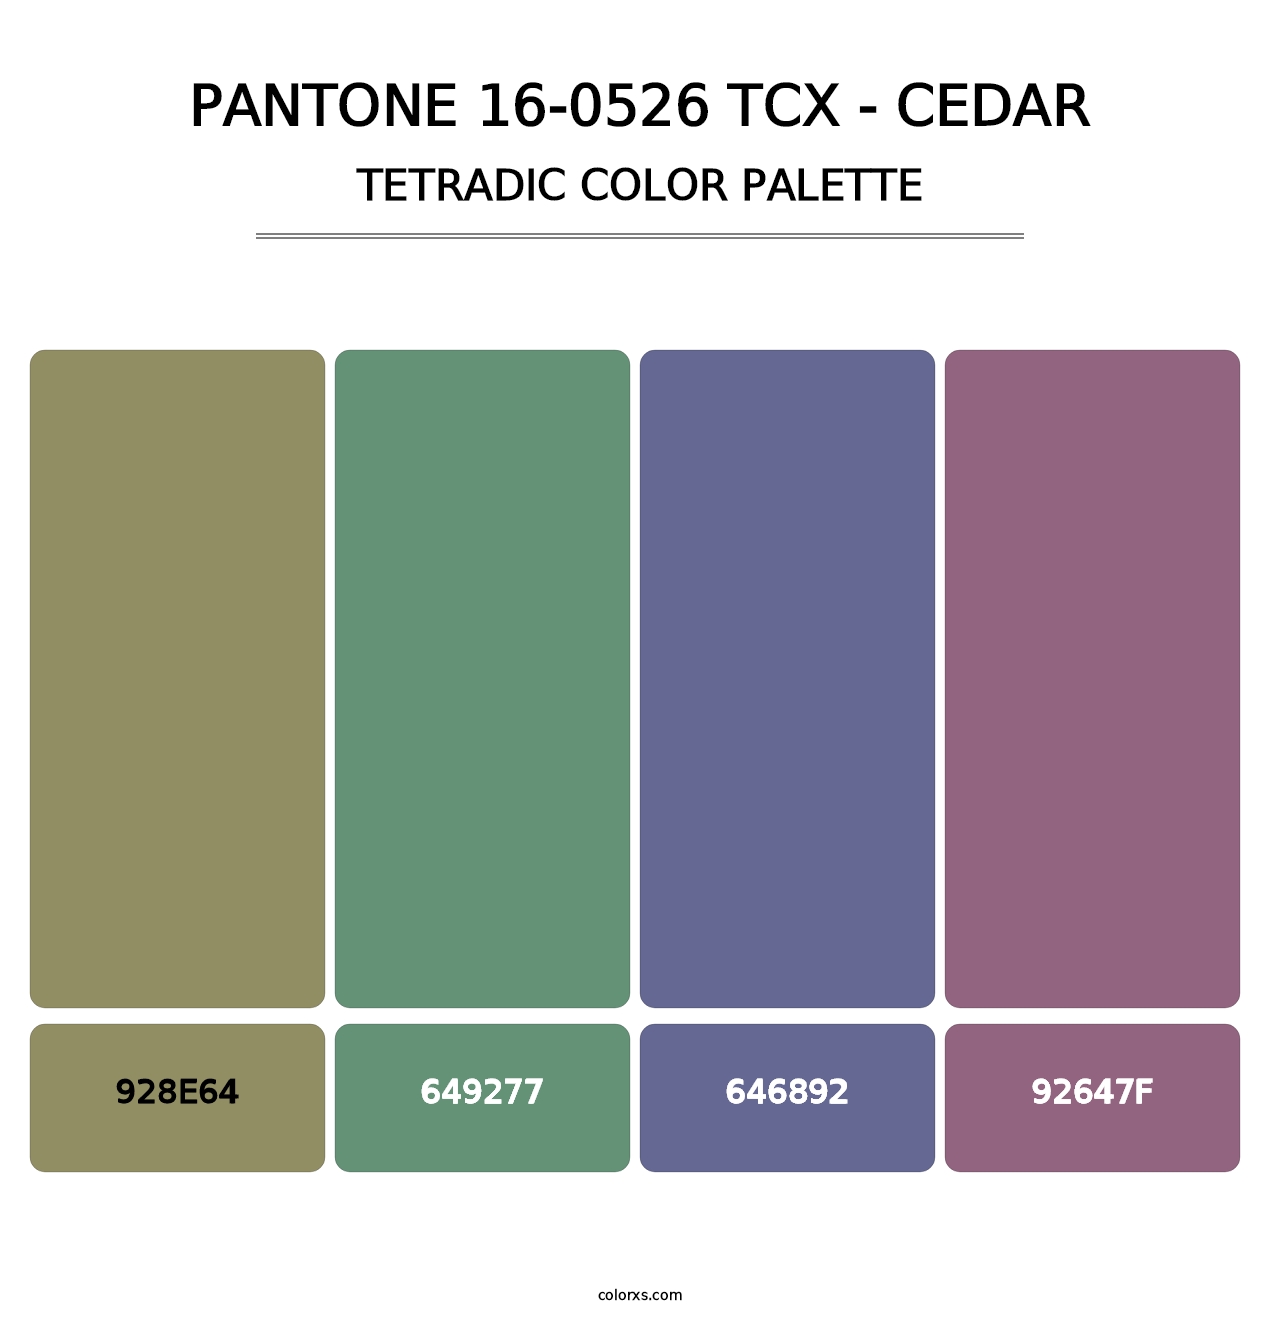 PANTONE 16-0526 TCX - Cedar - Tetradic Color Palette